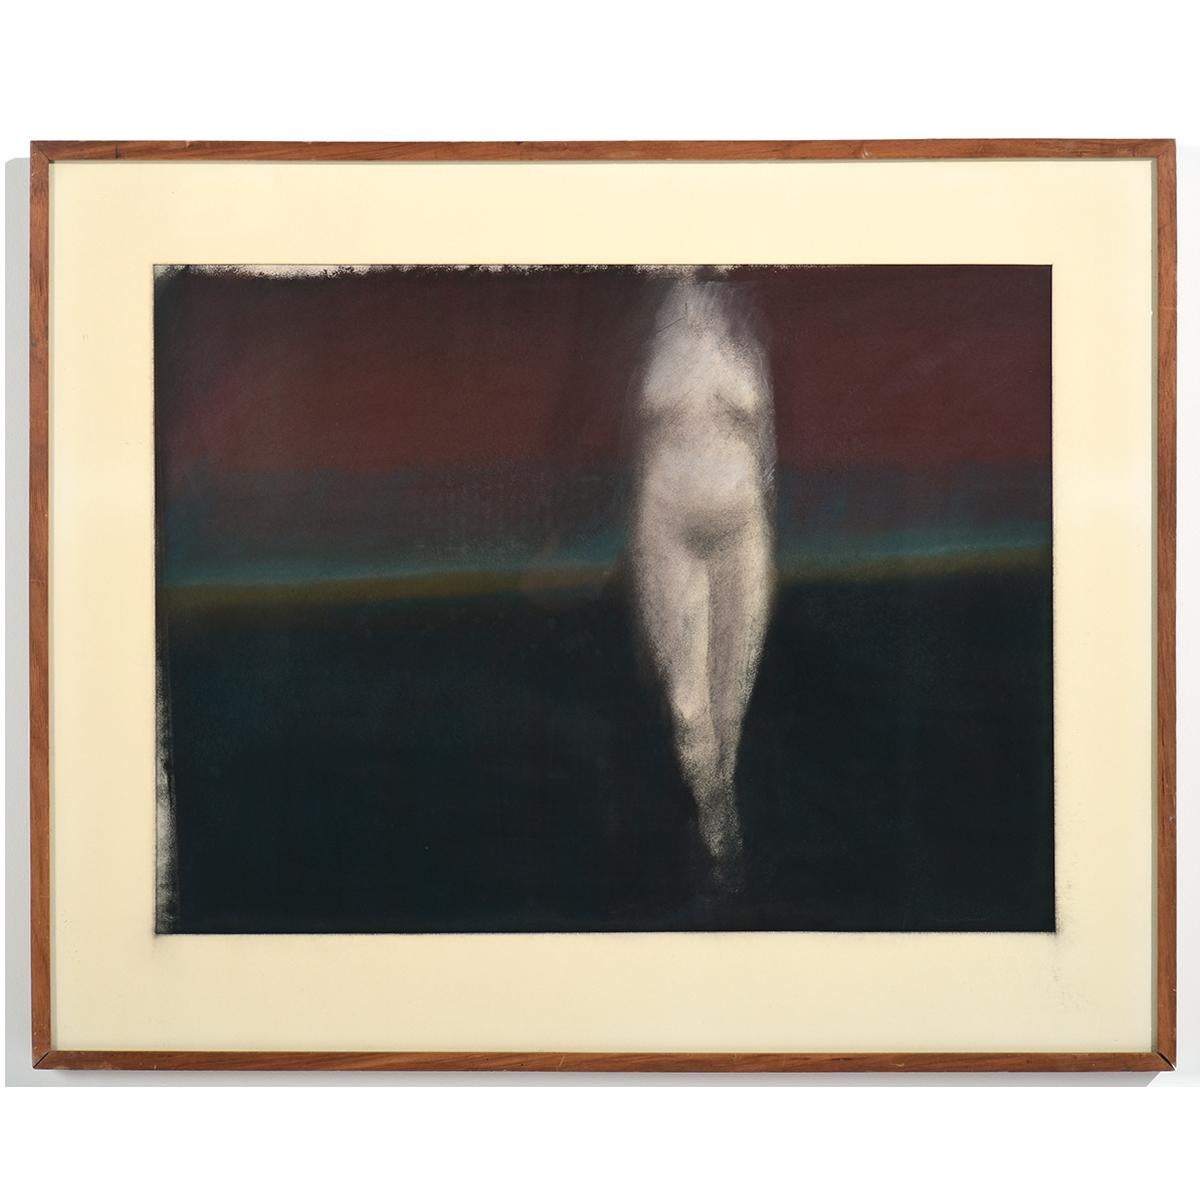 "The Model #5" est un pastel sur papier représentant une figure féminine nue émergeant de ce qui semble être une brume du soir qui s'assombrit, suggérant un paysage lointain ou peut-être émergeant de la mer. La figure flotte plutôt qu'elle ne marche